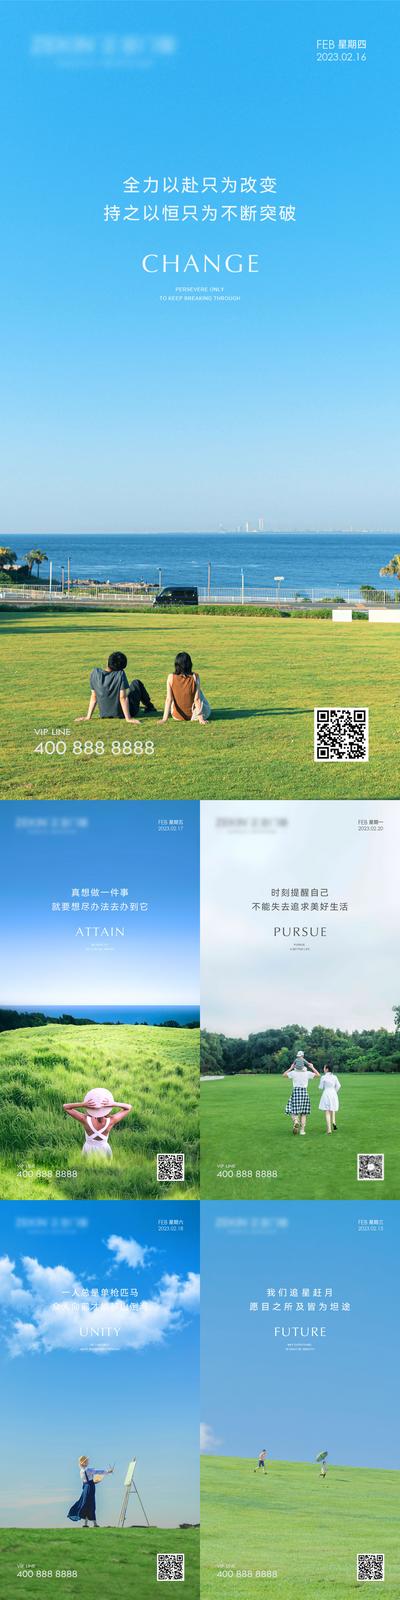 南门网 广告 海报 清新 系列 早安 手机海报 风景 励志 鸡汤 山 每日一图 简约 蓝色